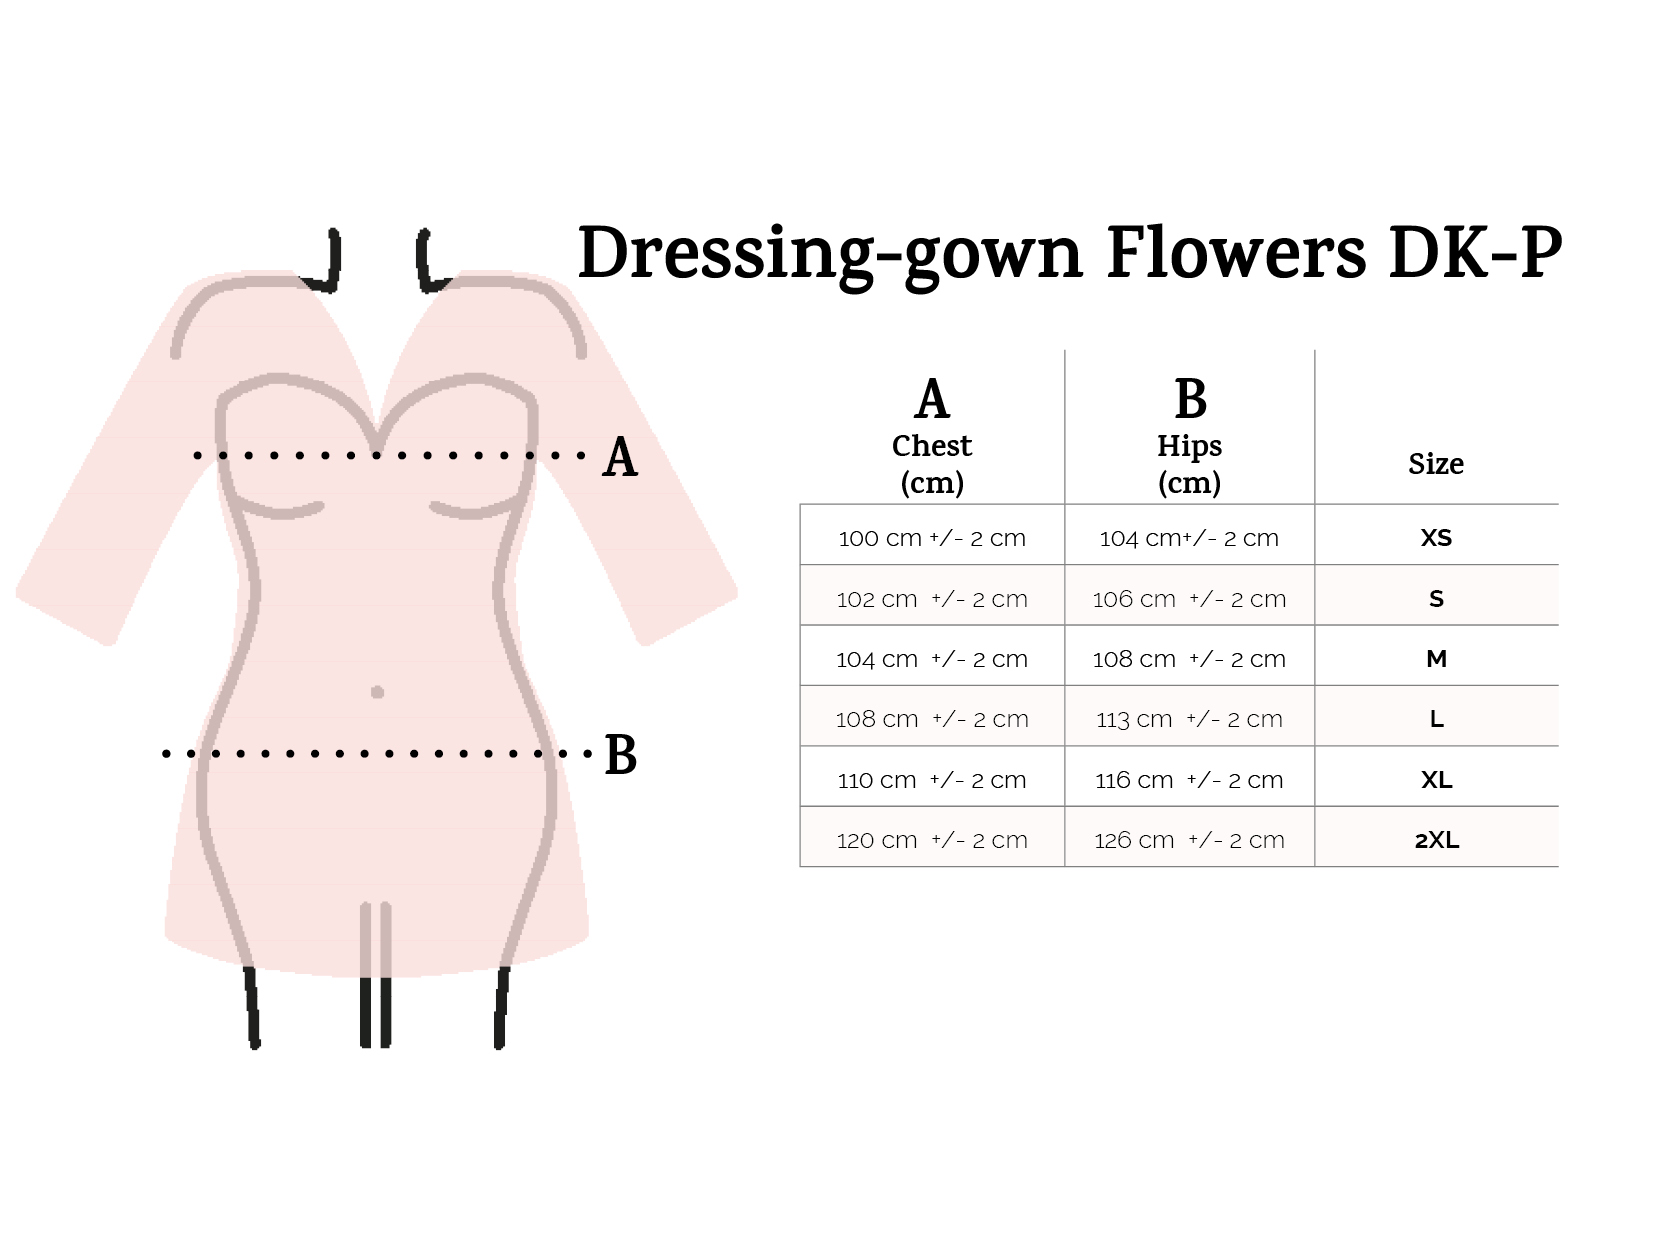 dressing-gown en flowers.jpg